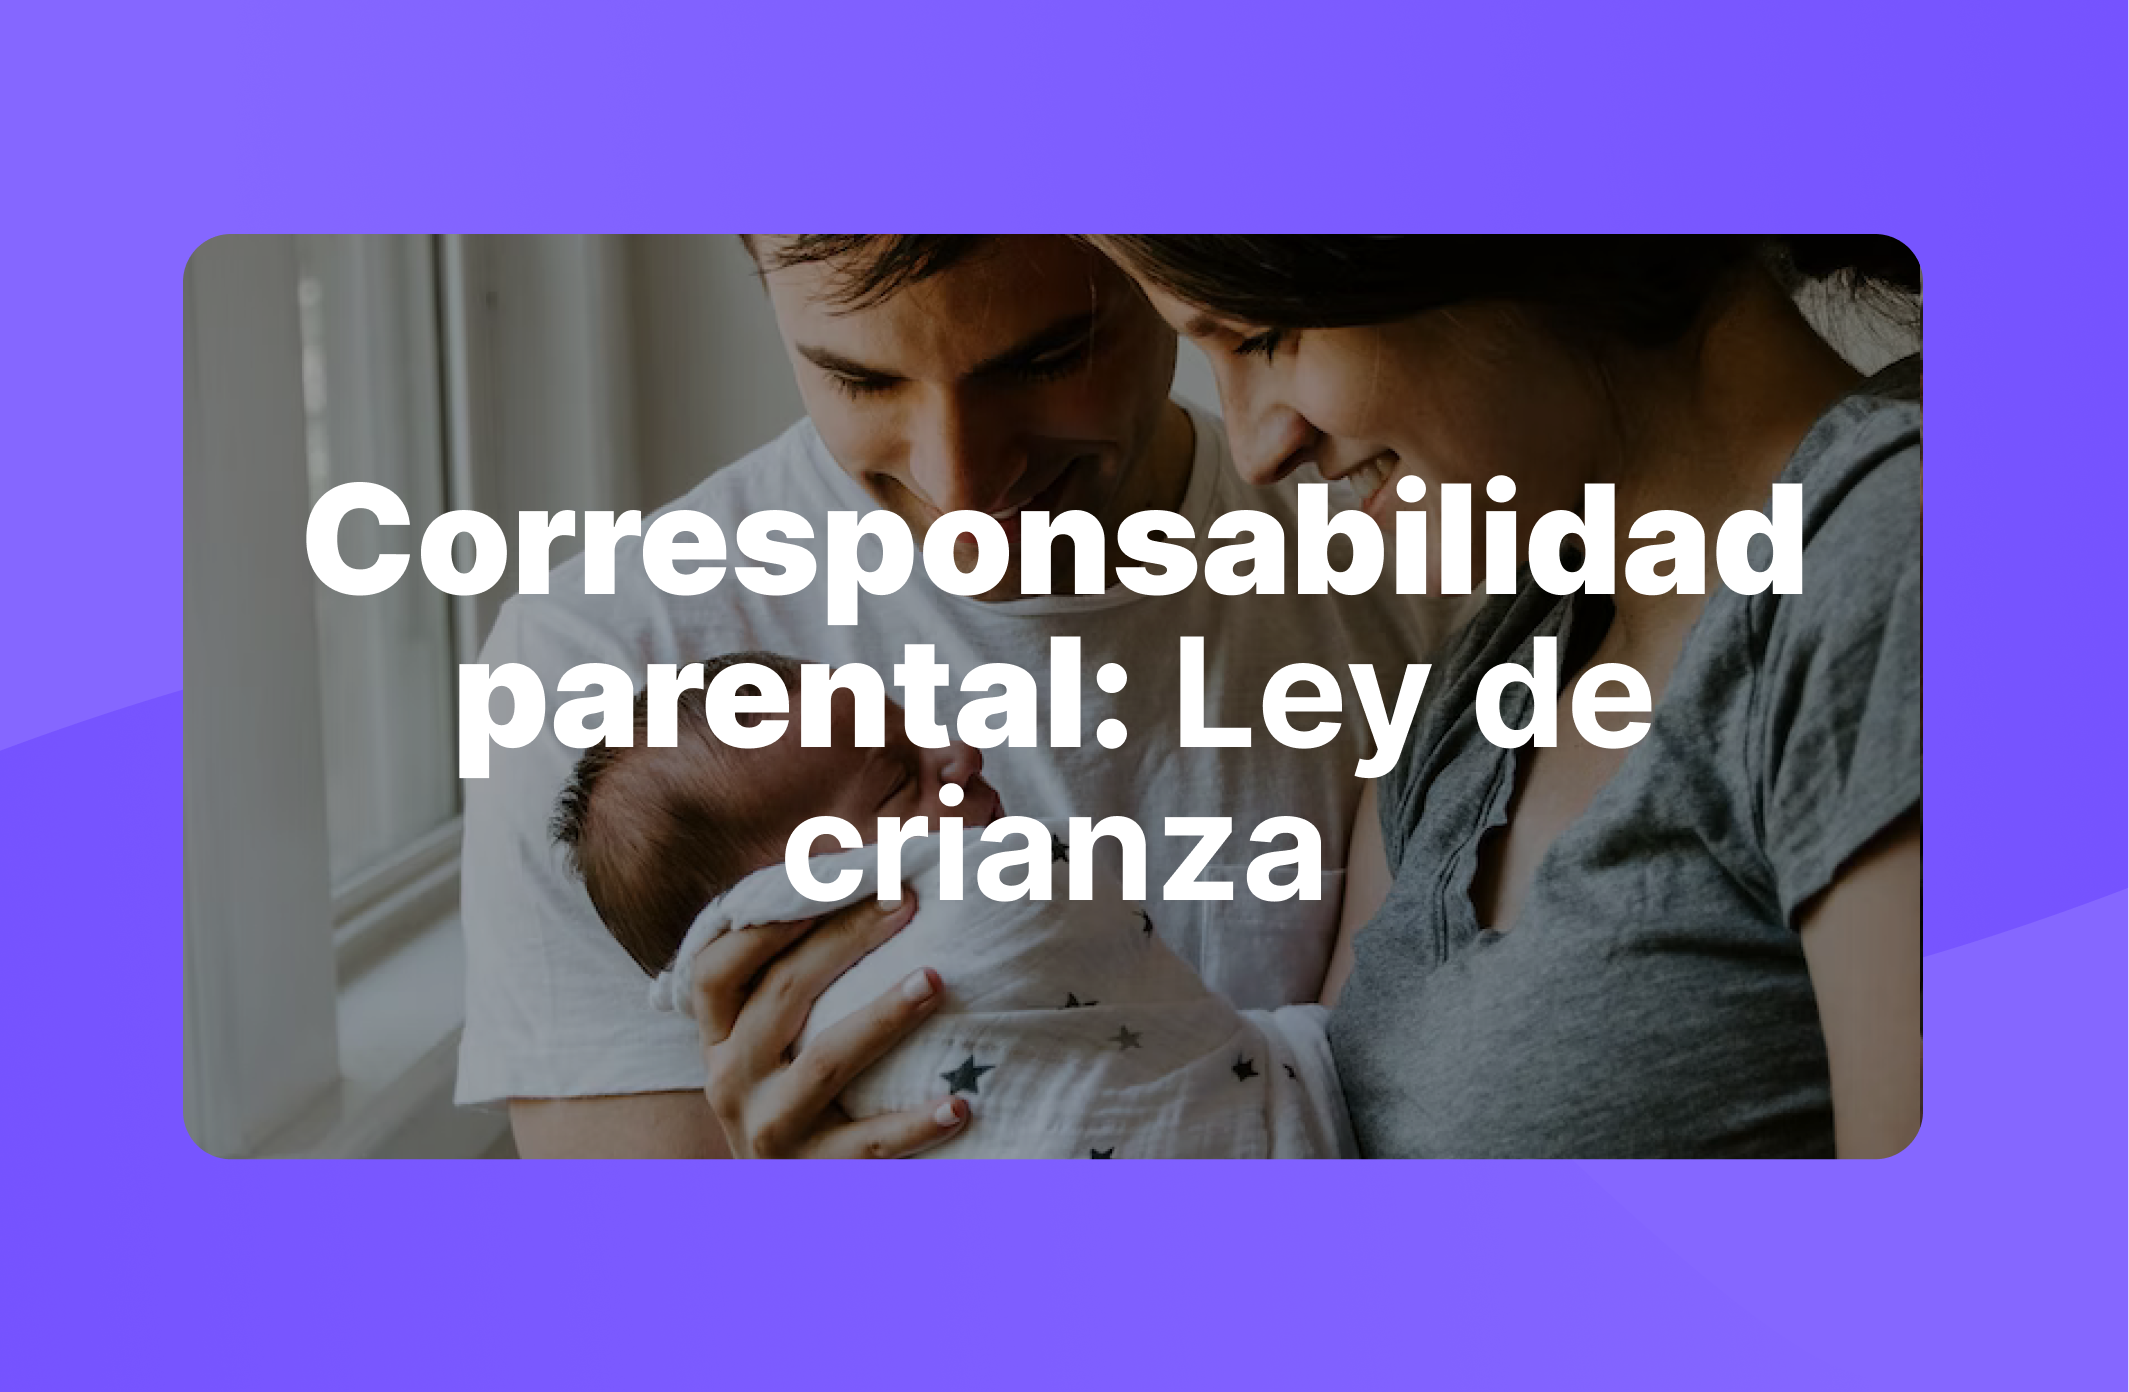 Corresponsabilidad parental: Ley de crianza en Chile